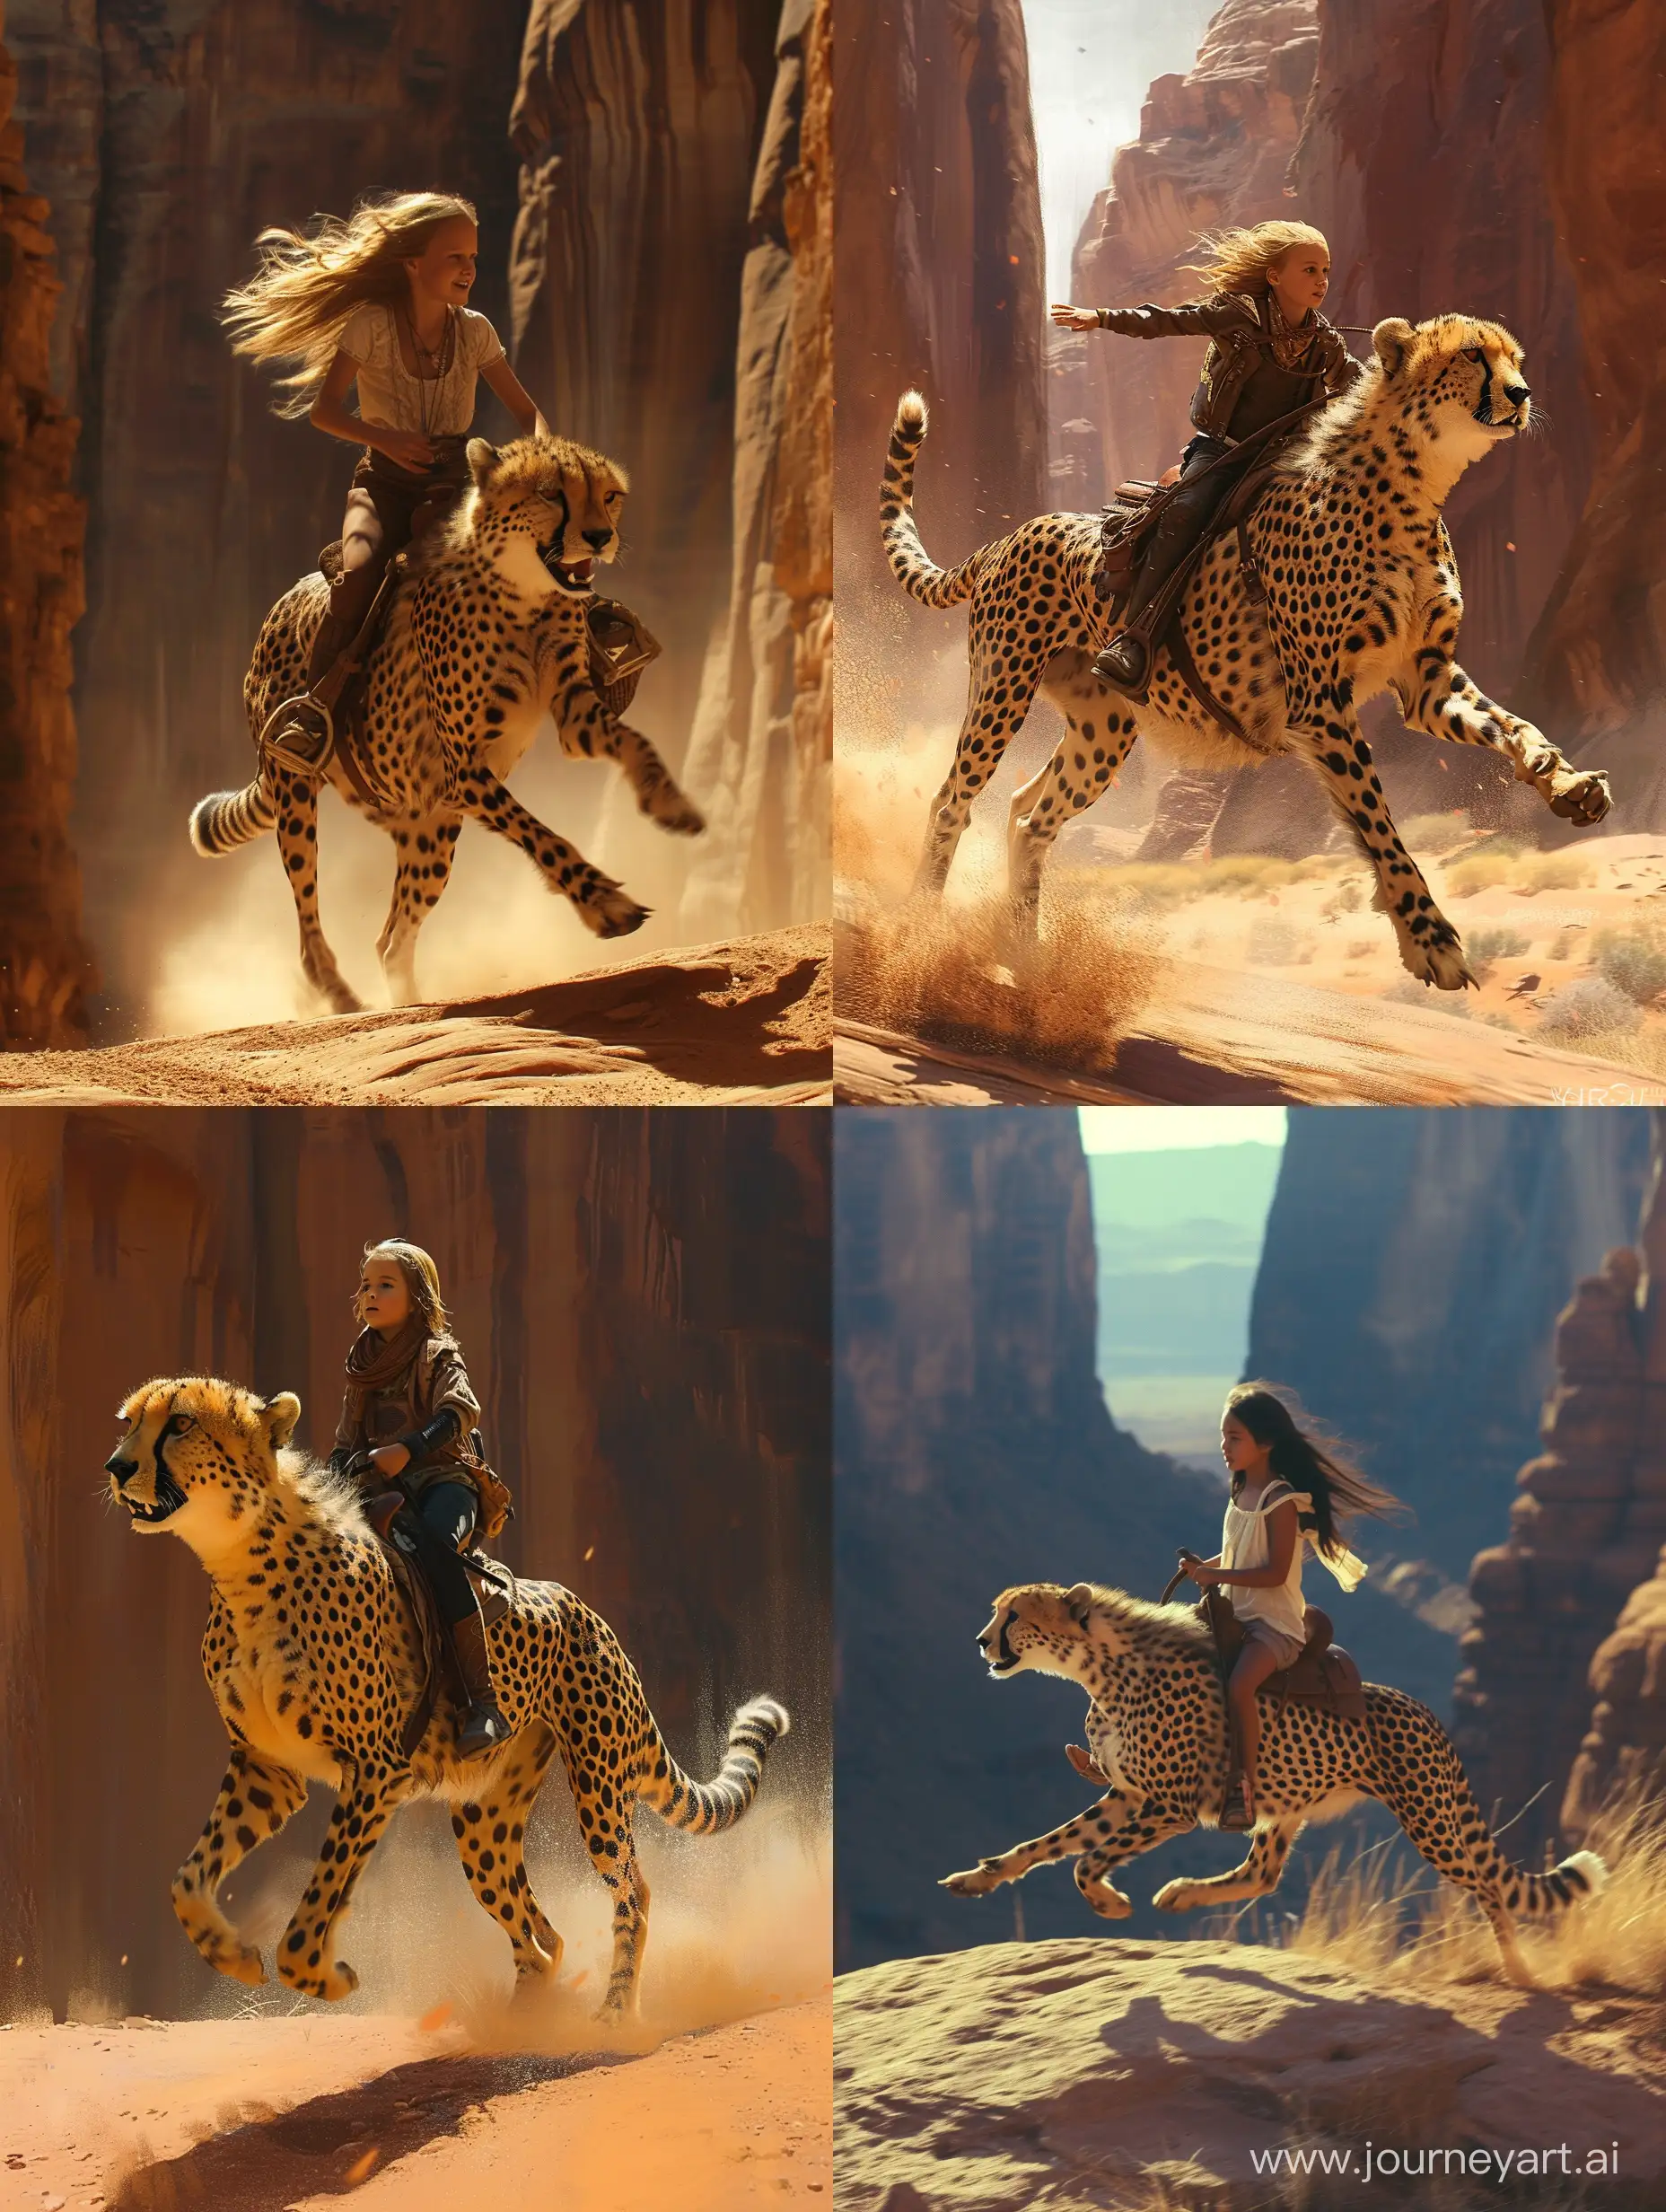 Adventurous-Girl-Riding-Cheetah-through-Canyon